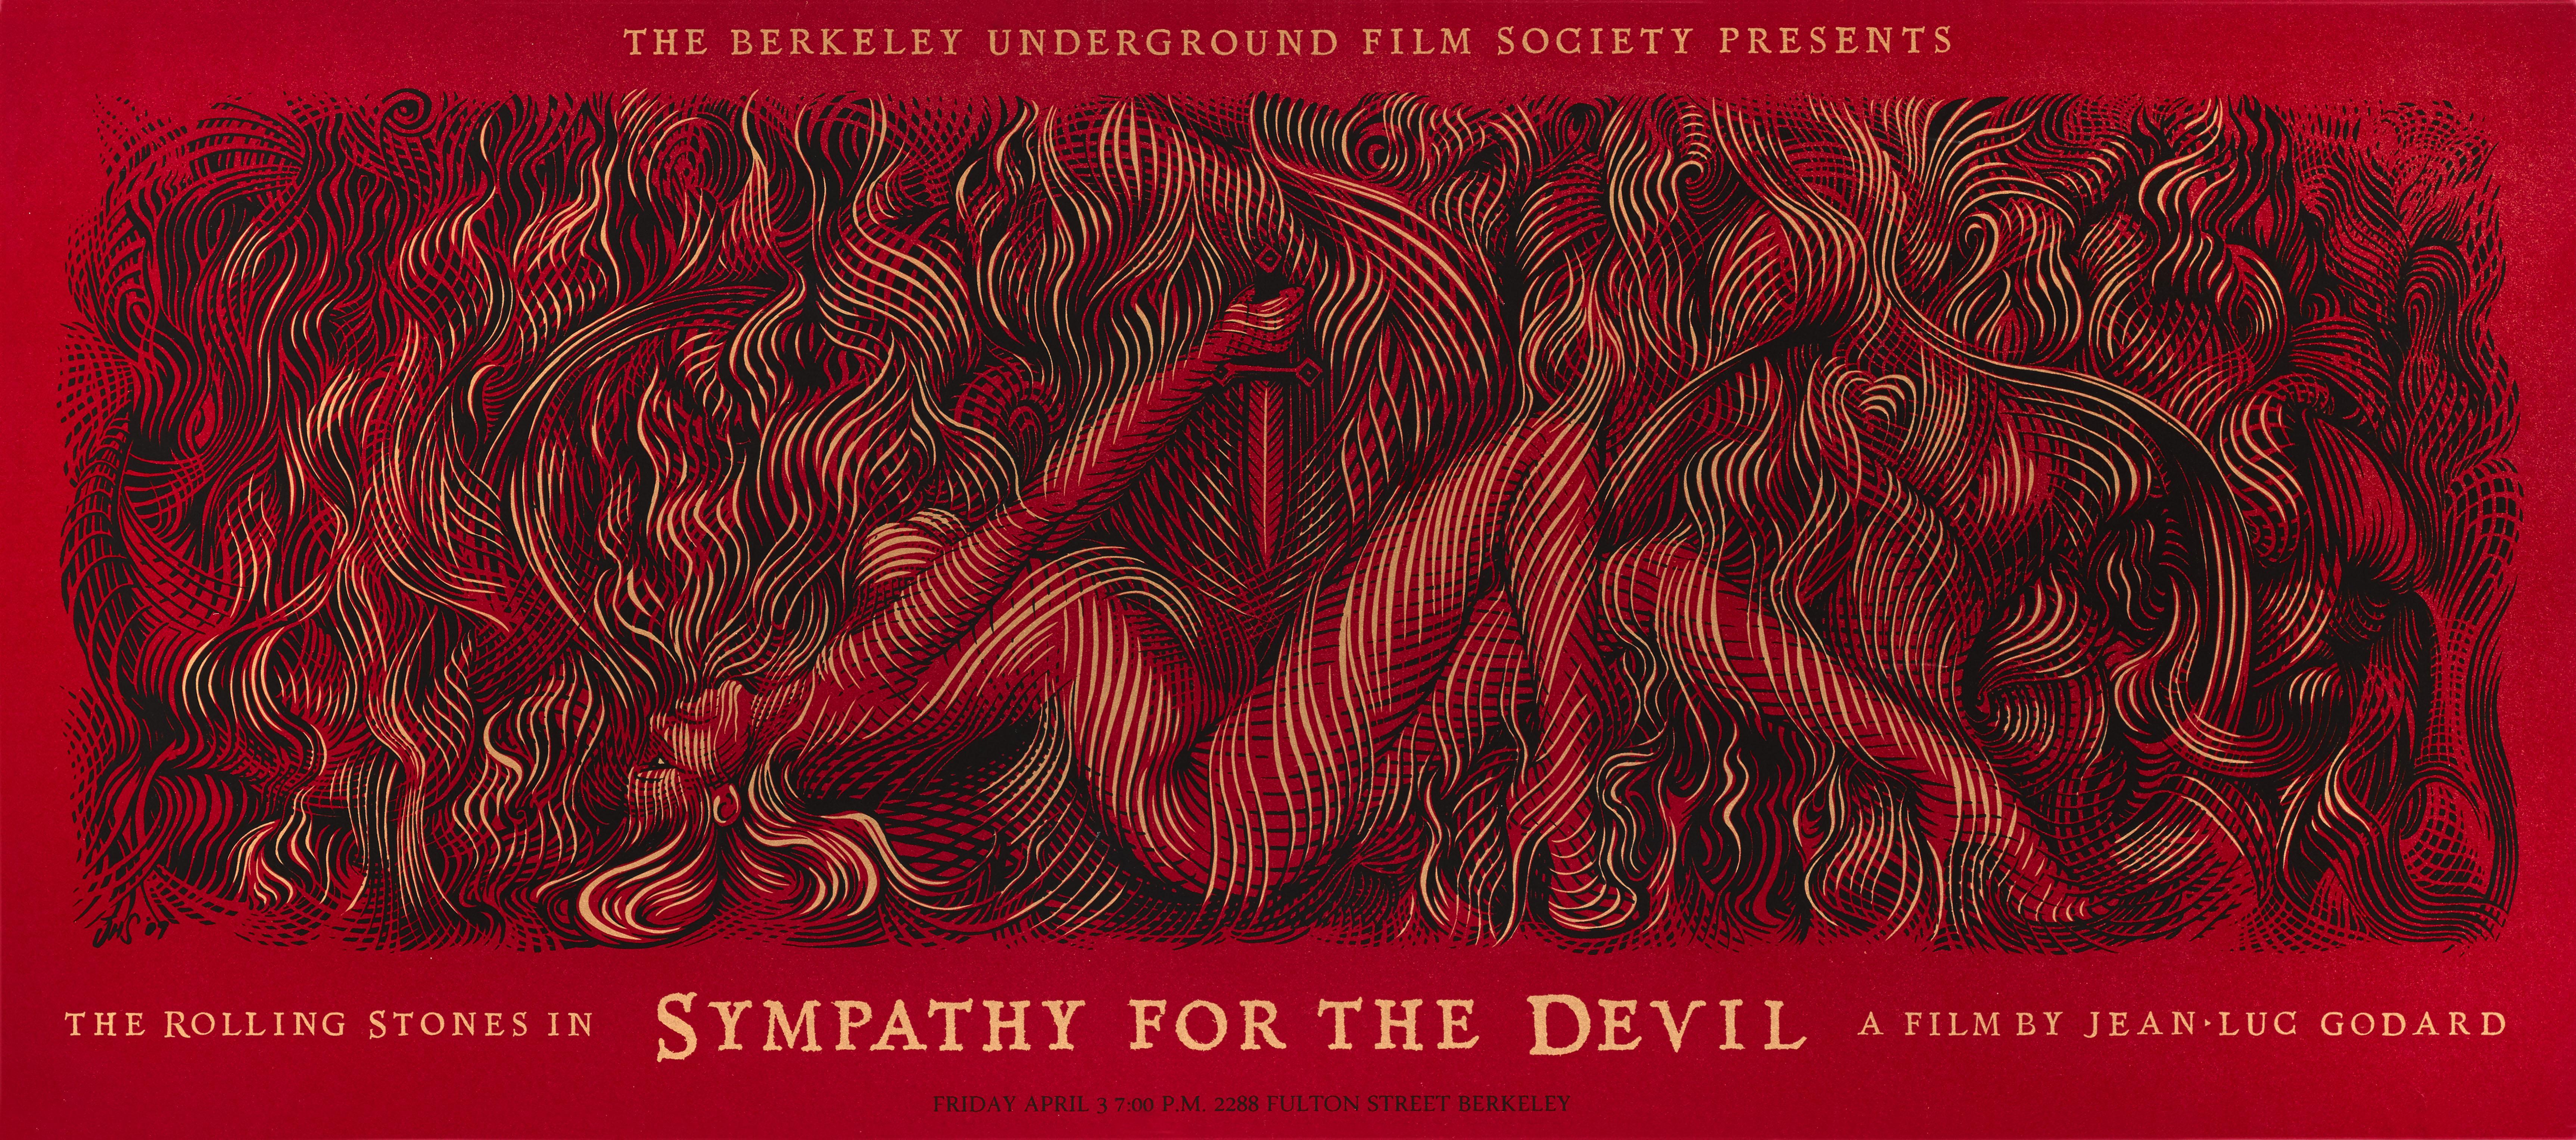 Original US-Siebdruck in limitierter Auflage von 175 Stück der Berkeley Underground Film Society aus dem Jahr 2009, erstellt mit Metallic-Tinte.
Dieser Film von Jean-Luc Godard aus dem Jahr 1968 war sein erster in Großbritannien gedrehter und